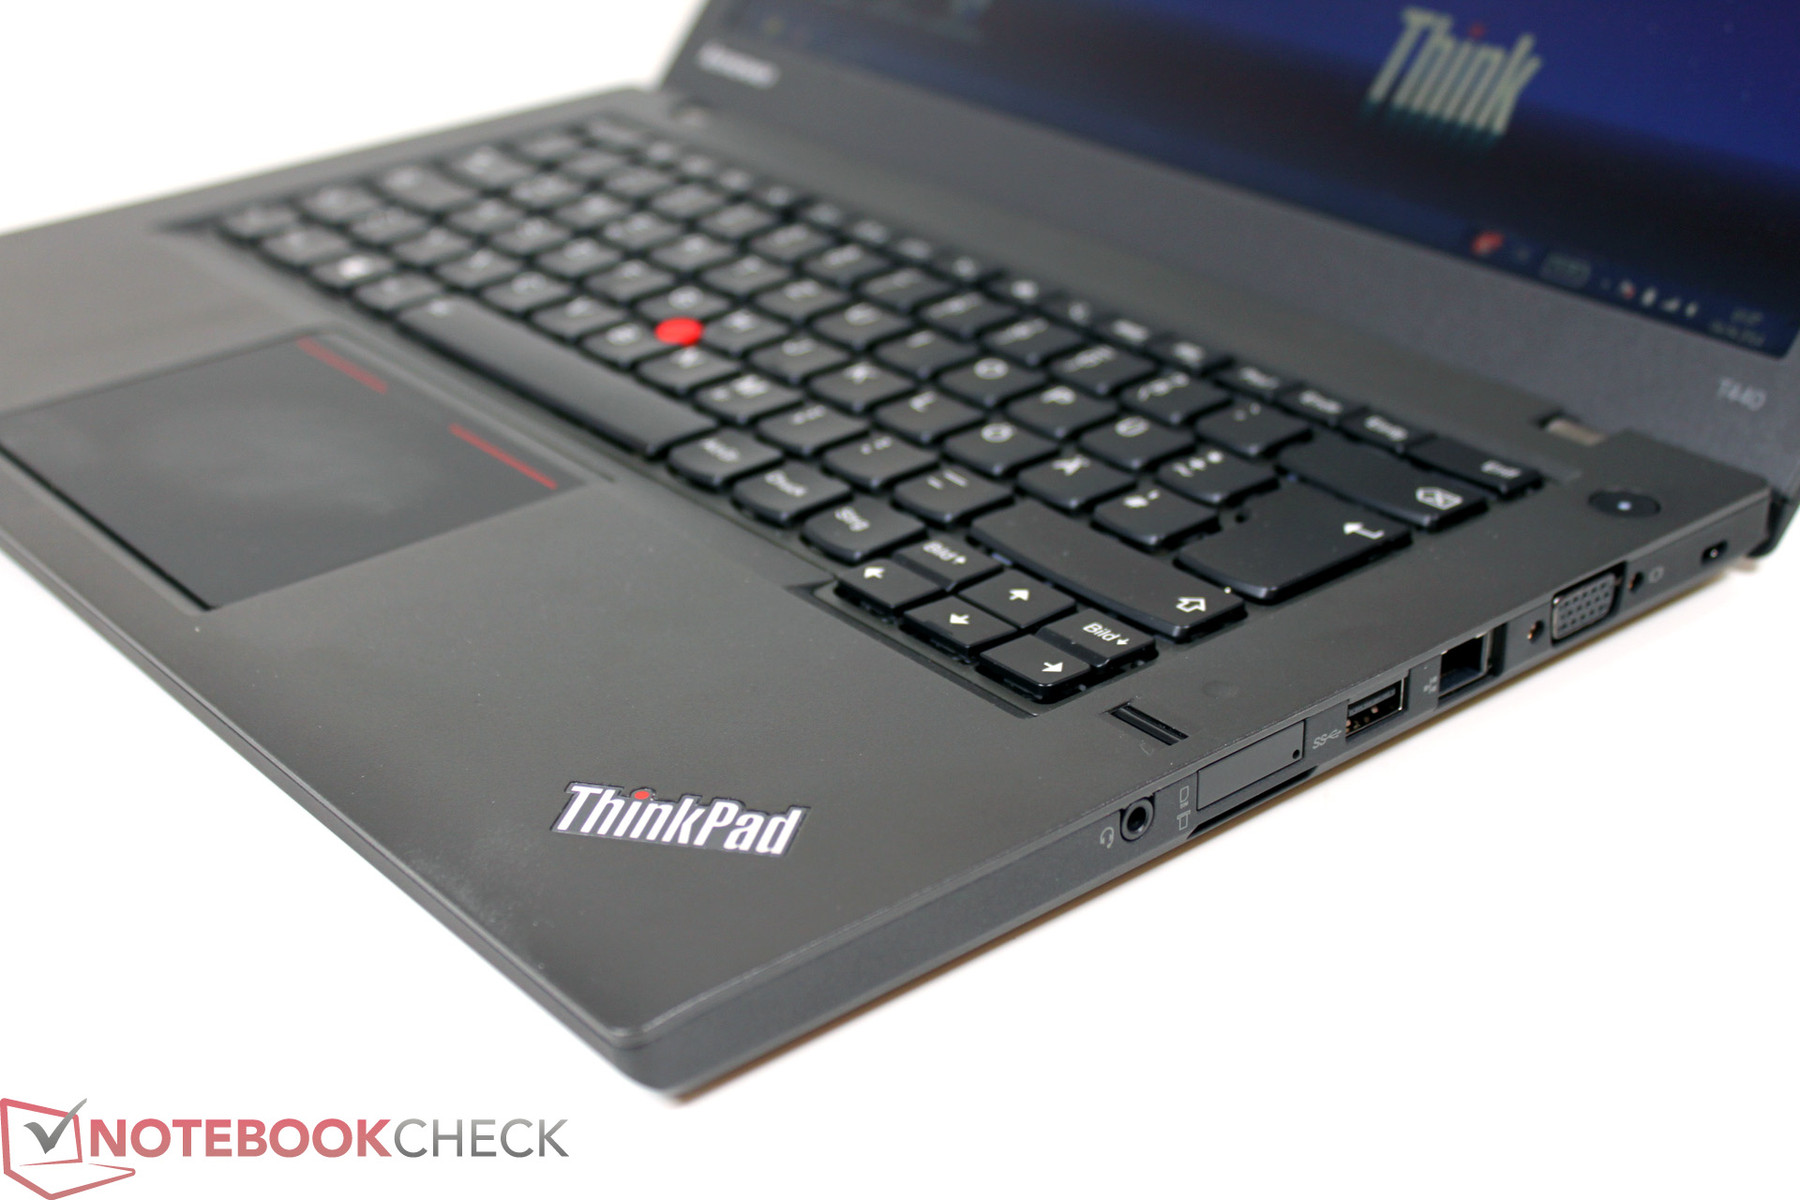 Lenovo thinkpad t440s